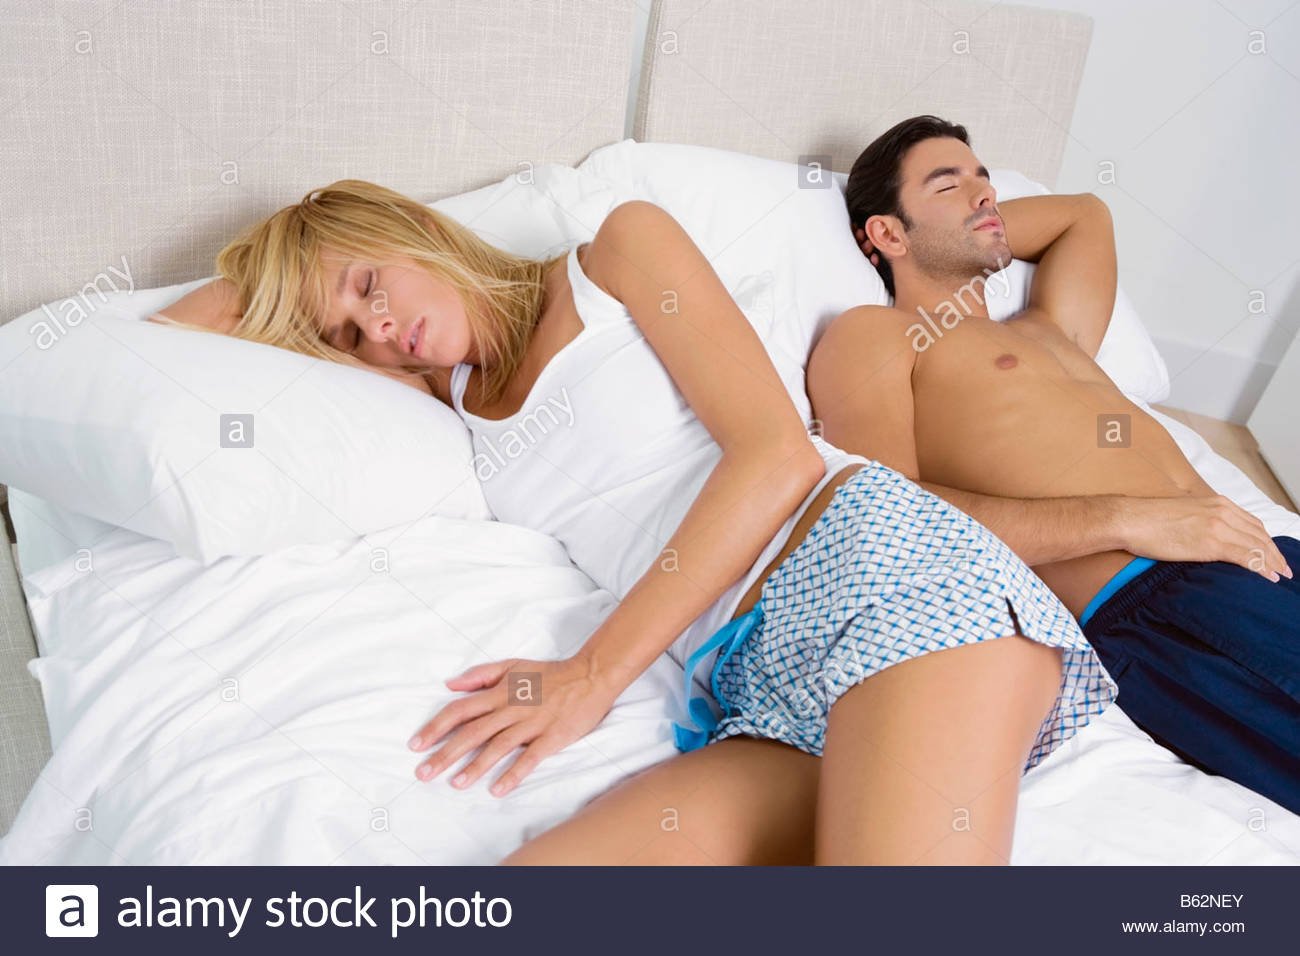 муж спит а его друг трахает спящую его жену фото 108